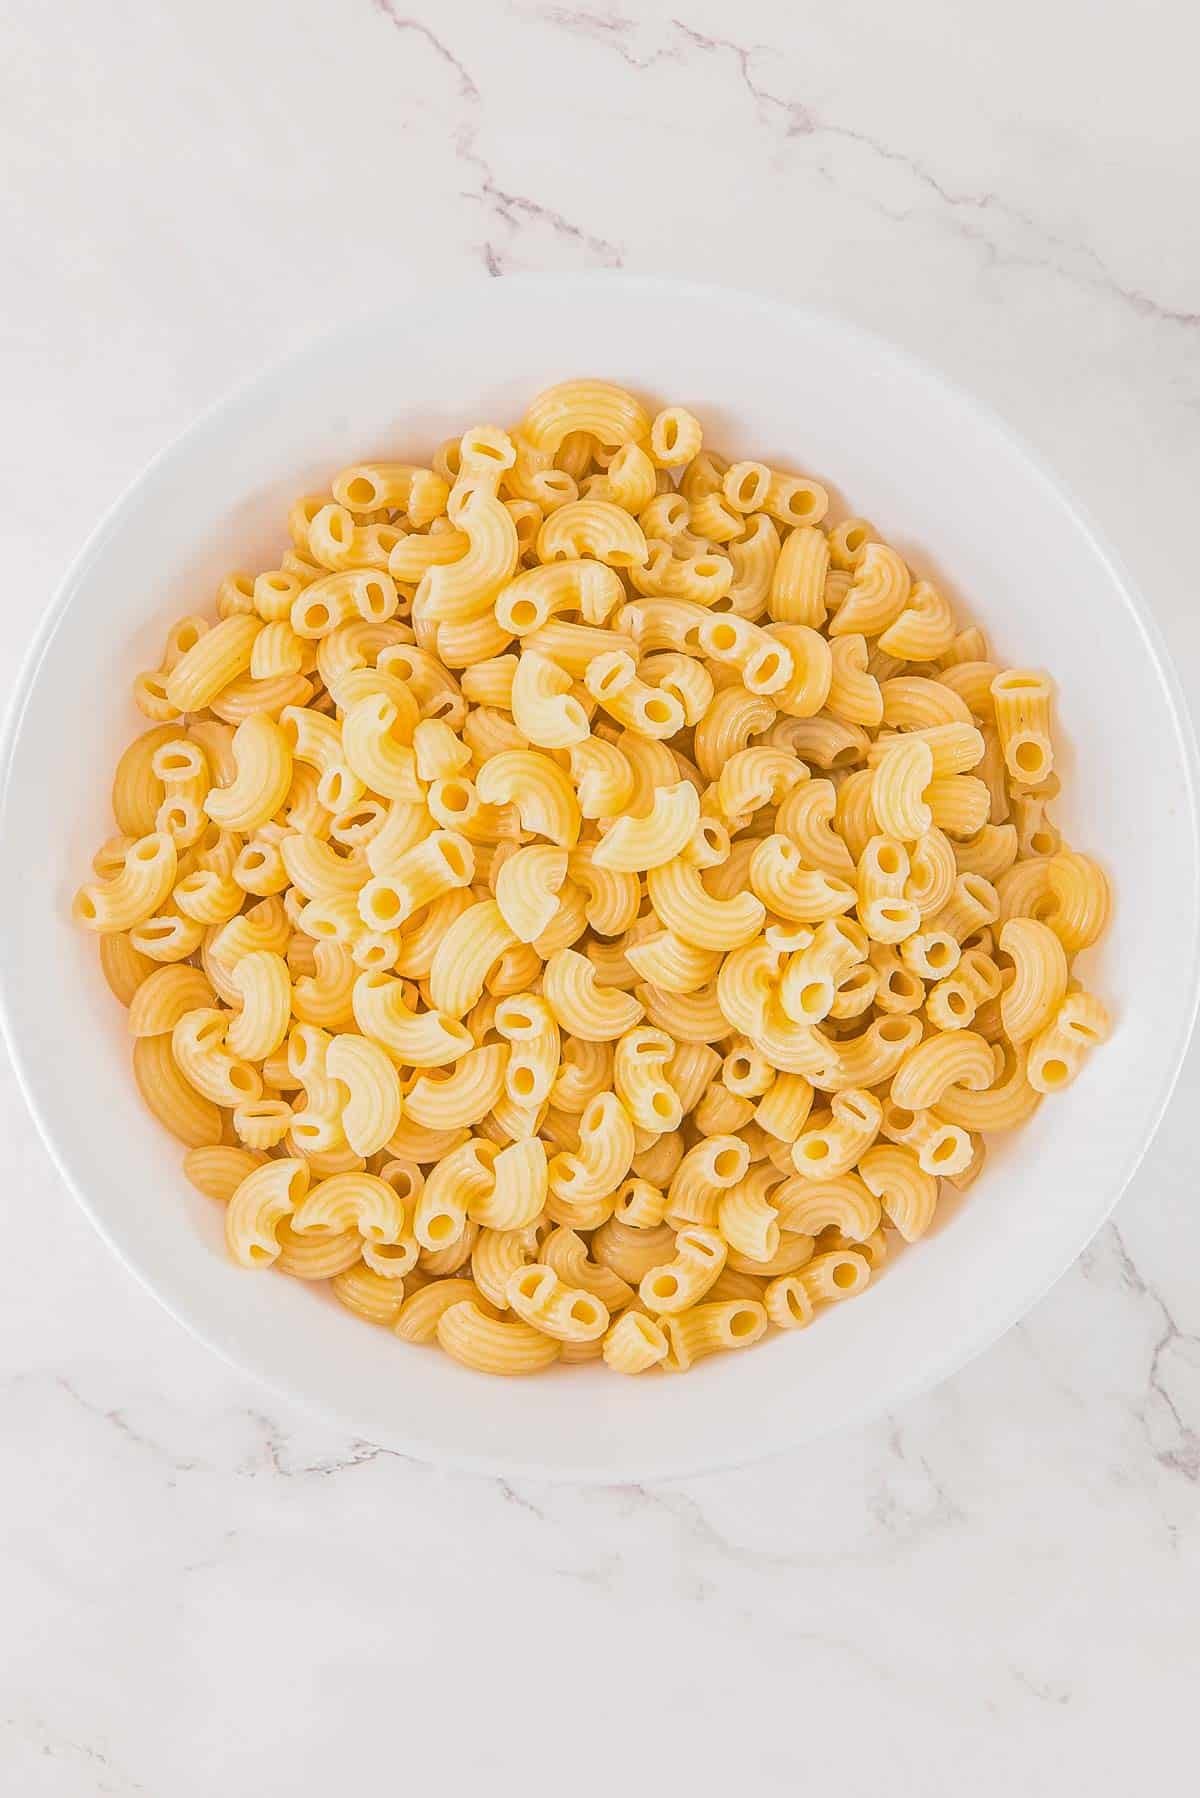 Elbow macaroni pasta in a white bowl.